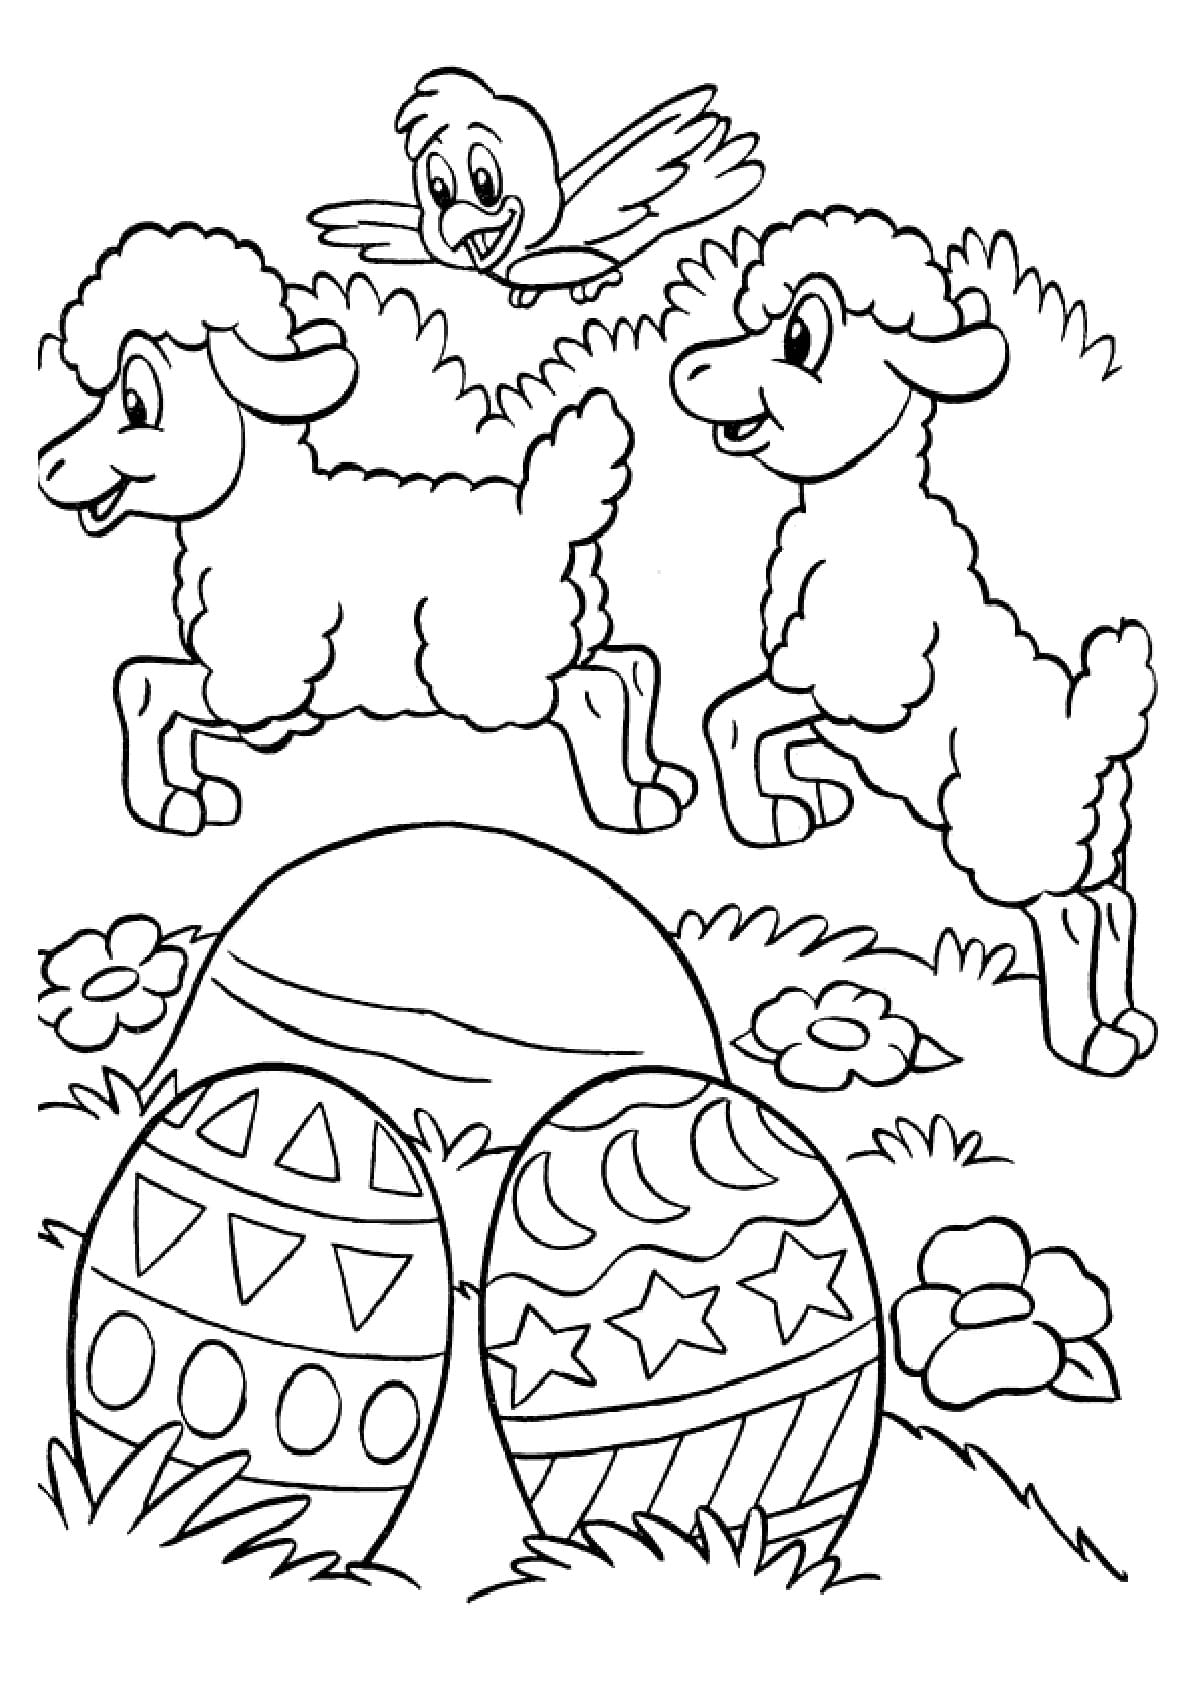 пасха раскраска для детей кулич и яйца 7